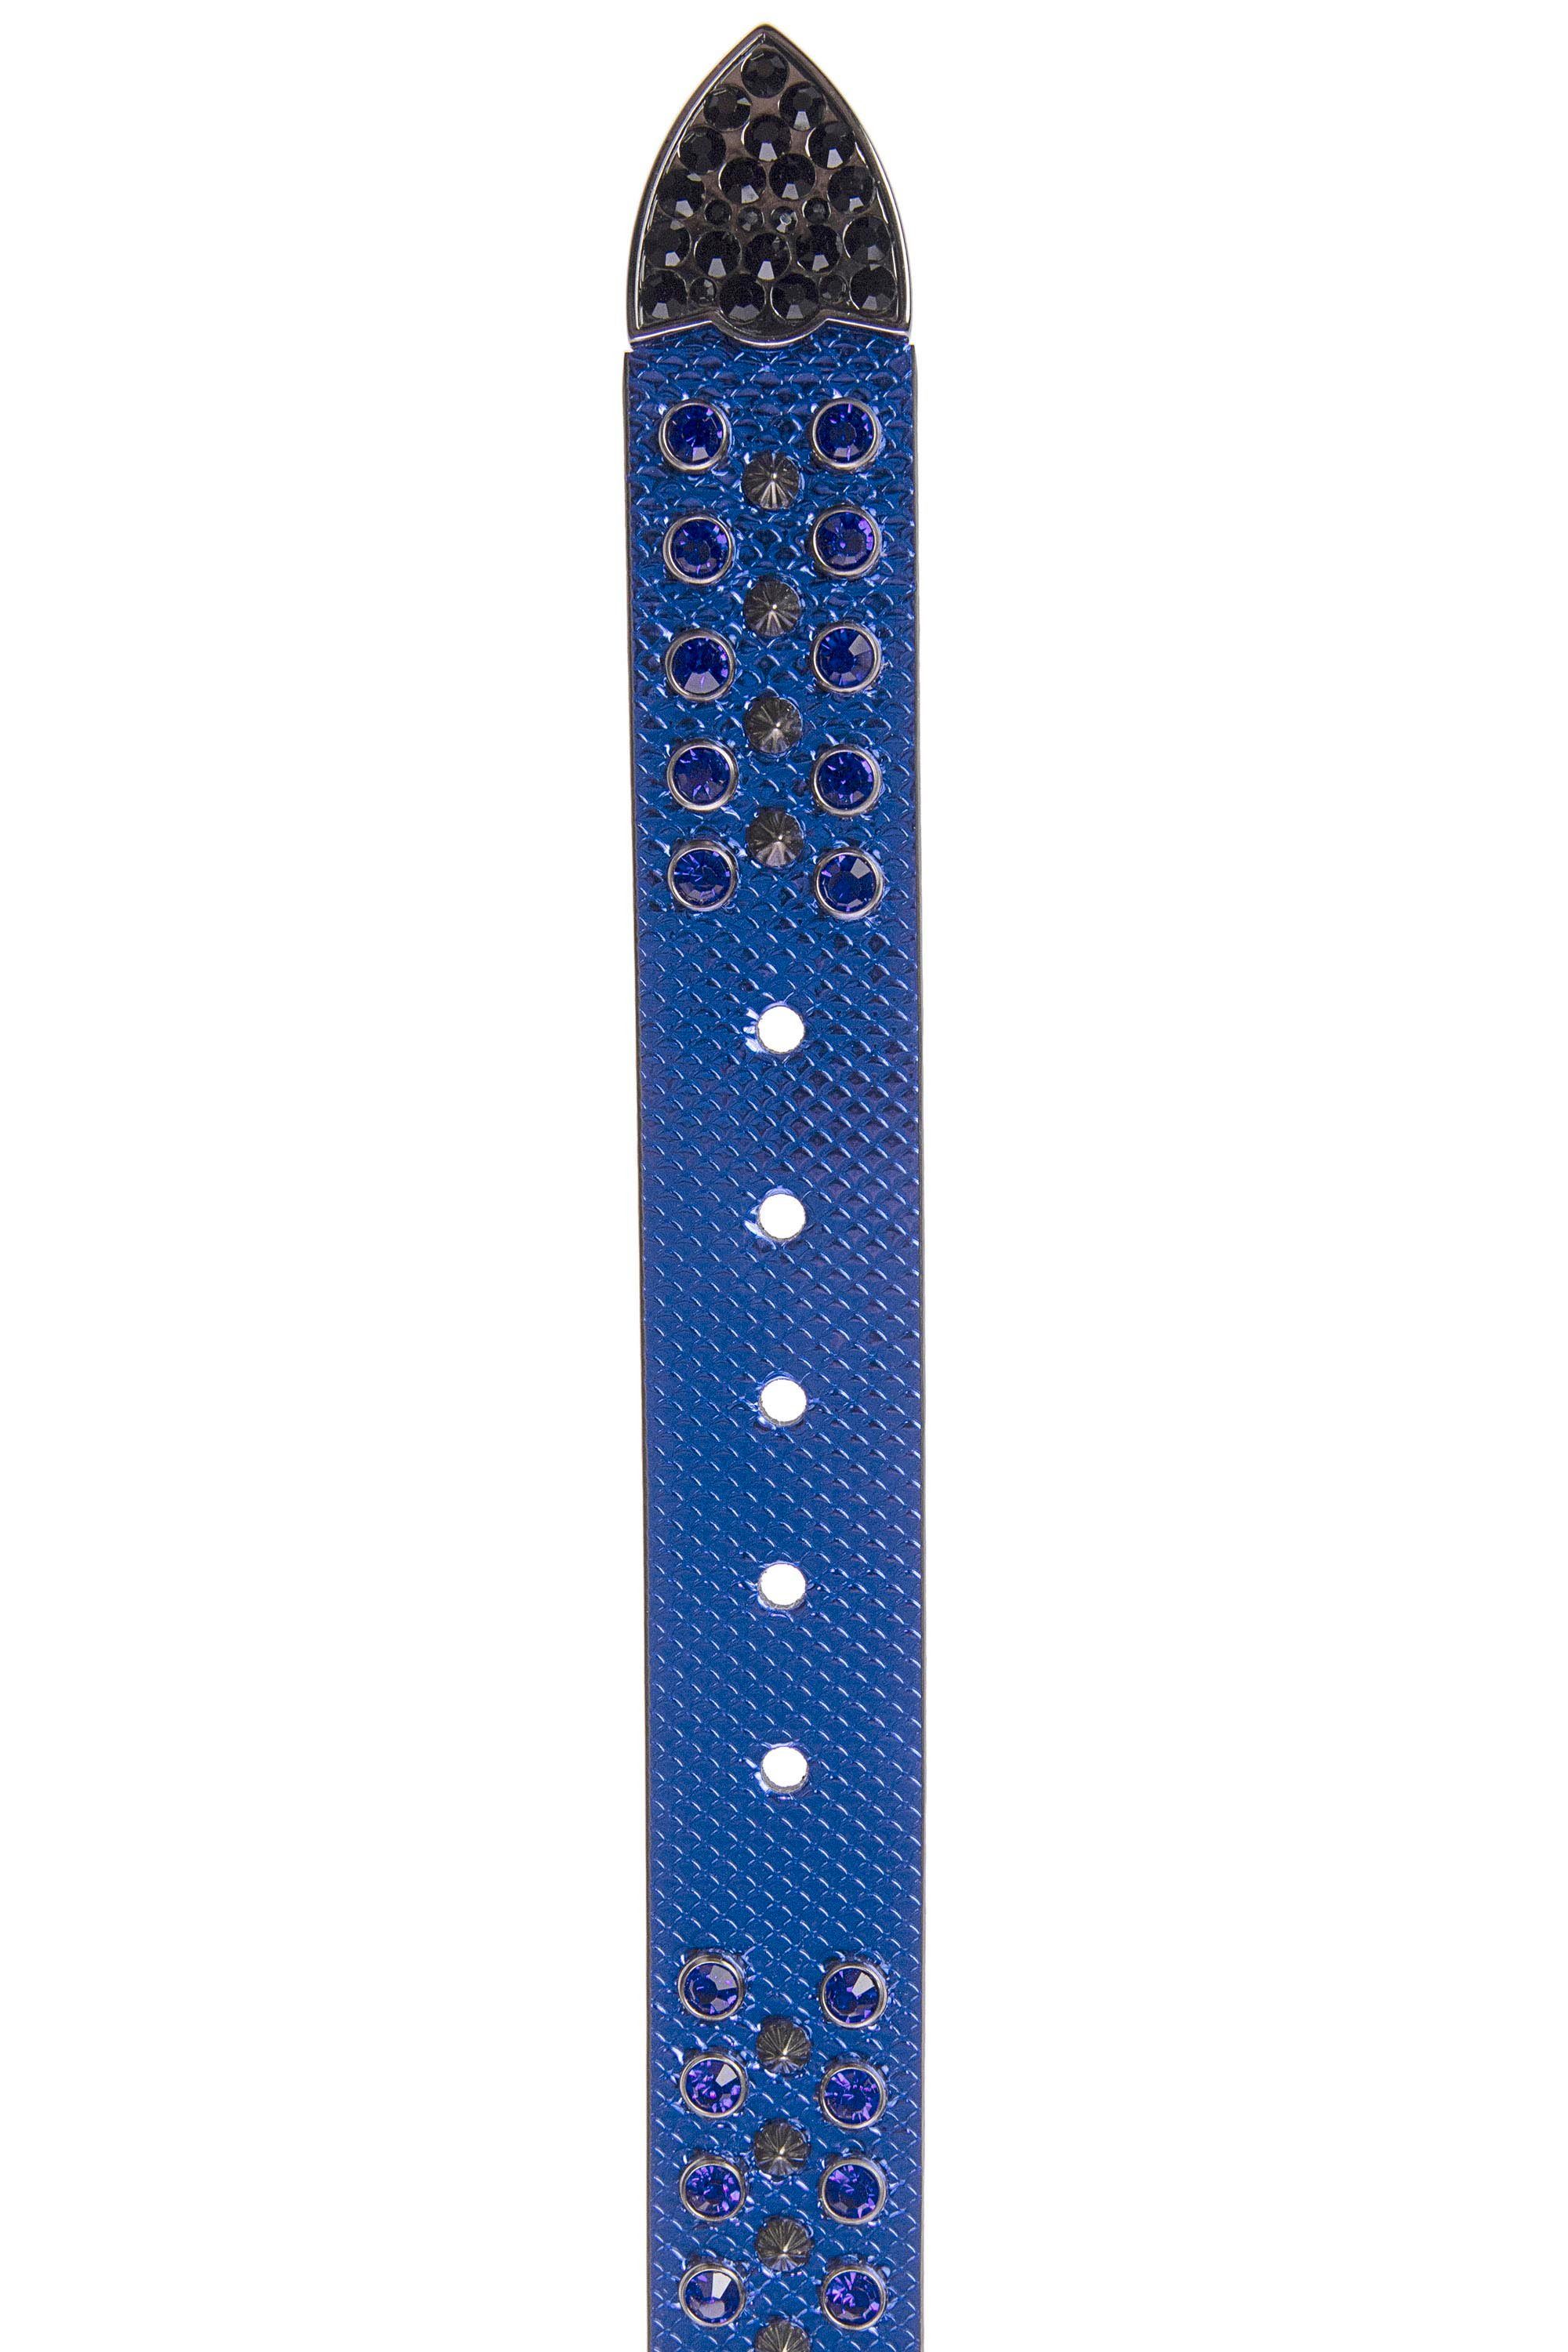 & Baxx trendigen Ledergürtel mit Glitzersteinchen Cipo blau